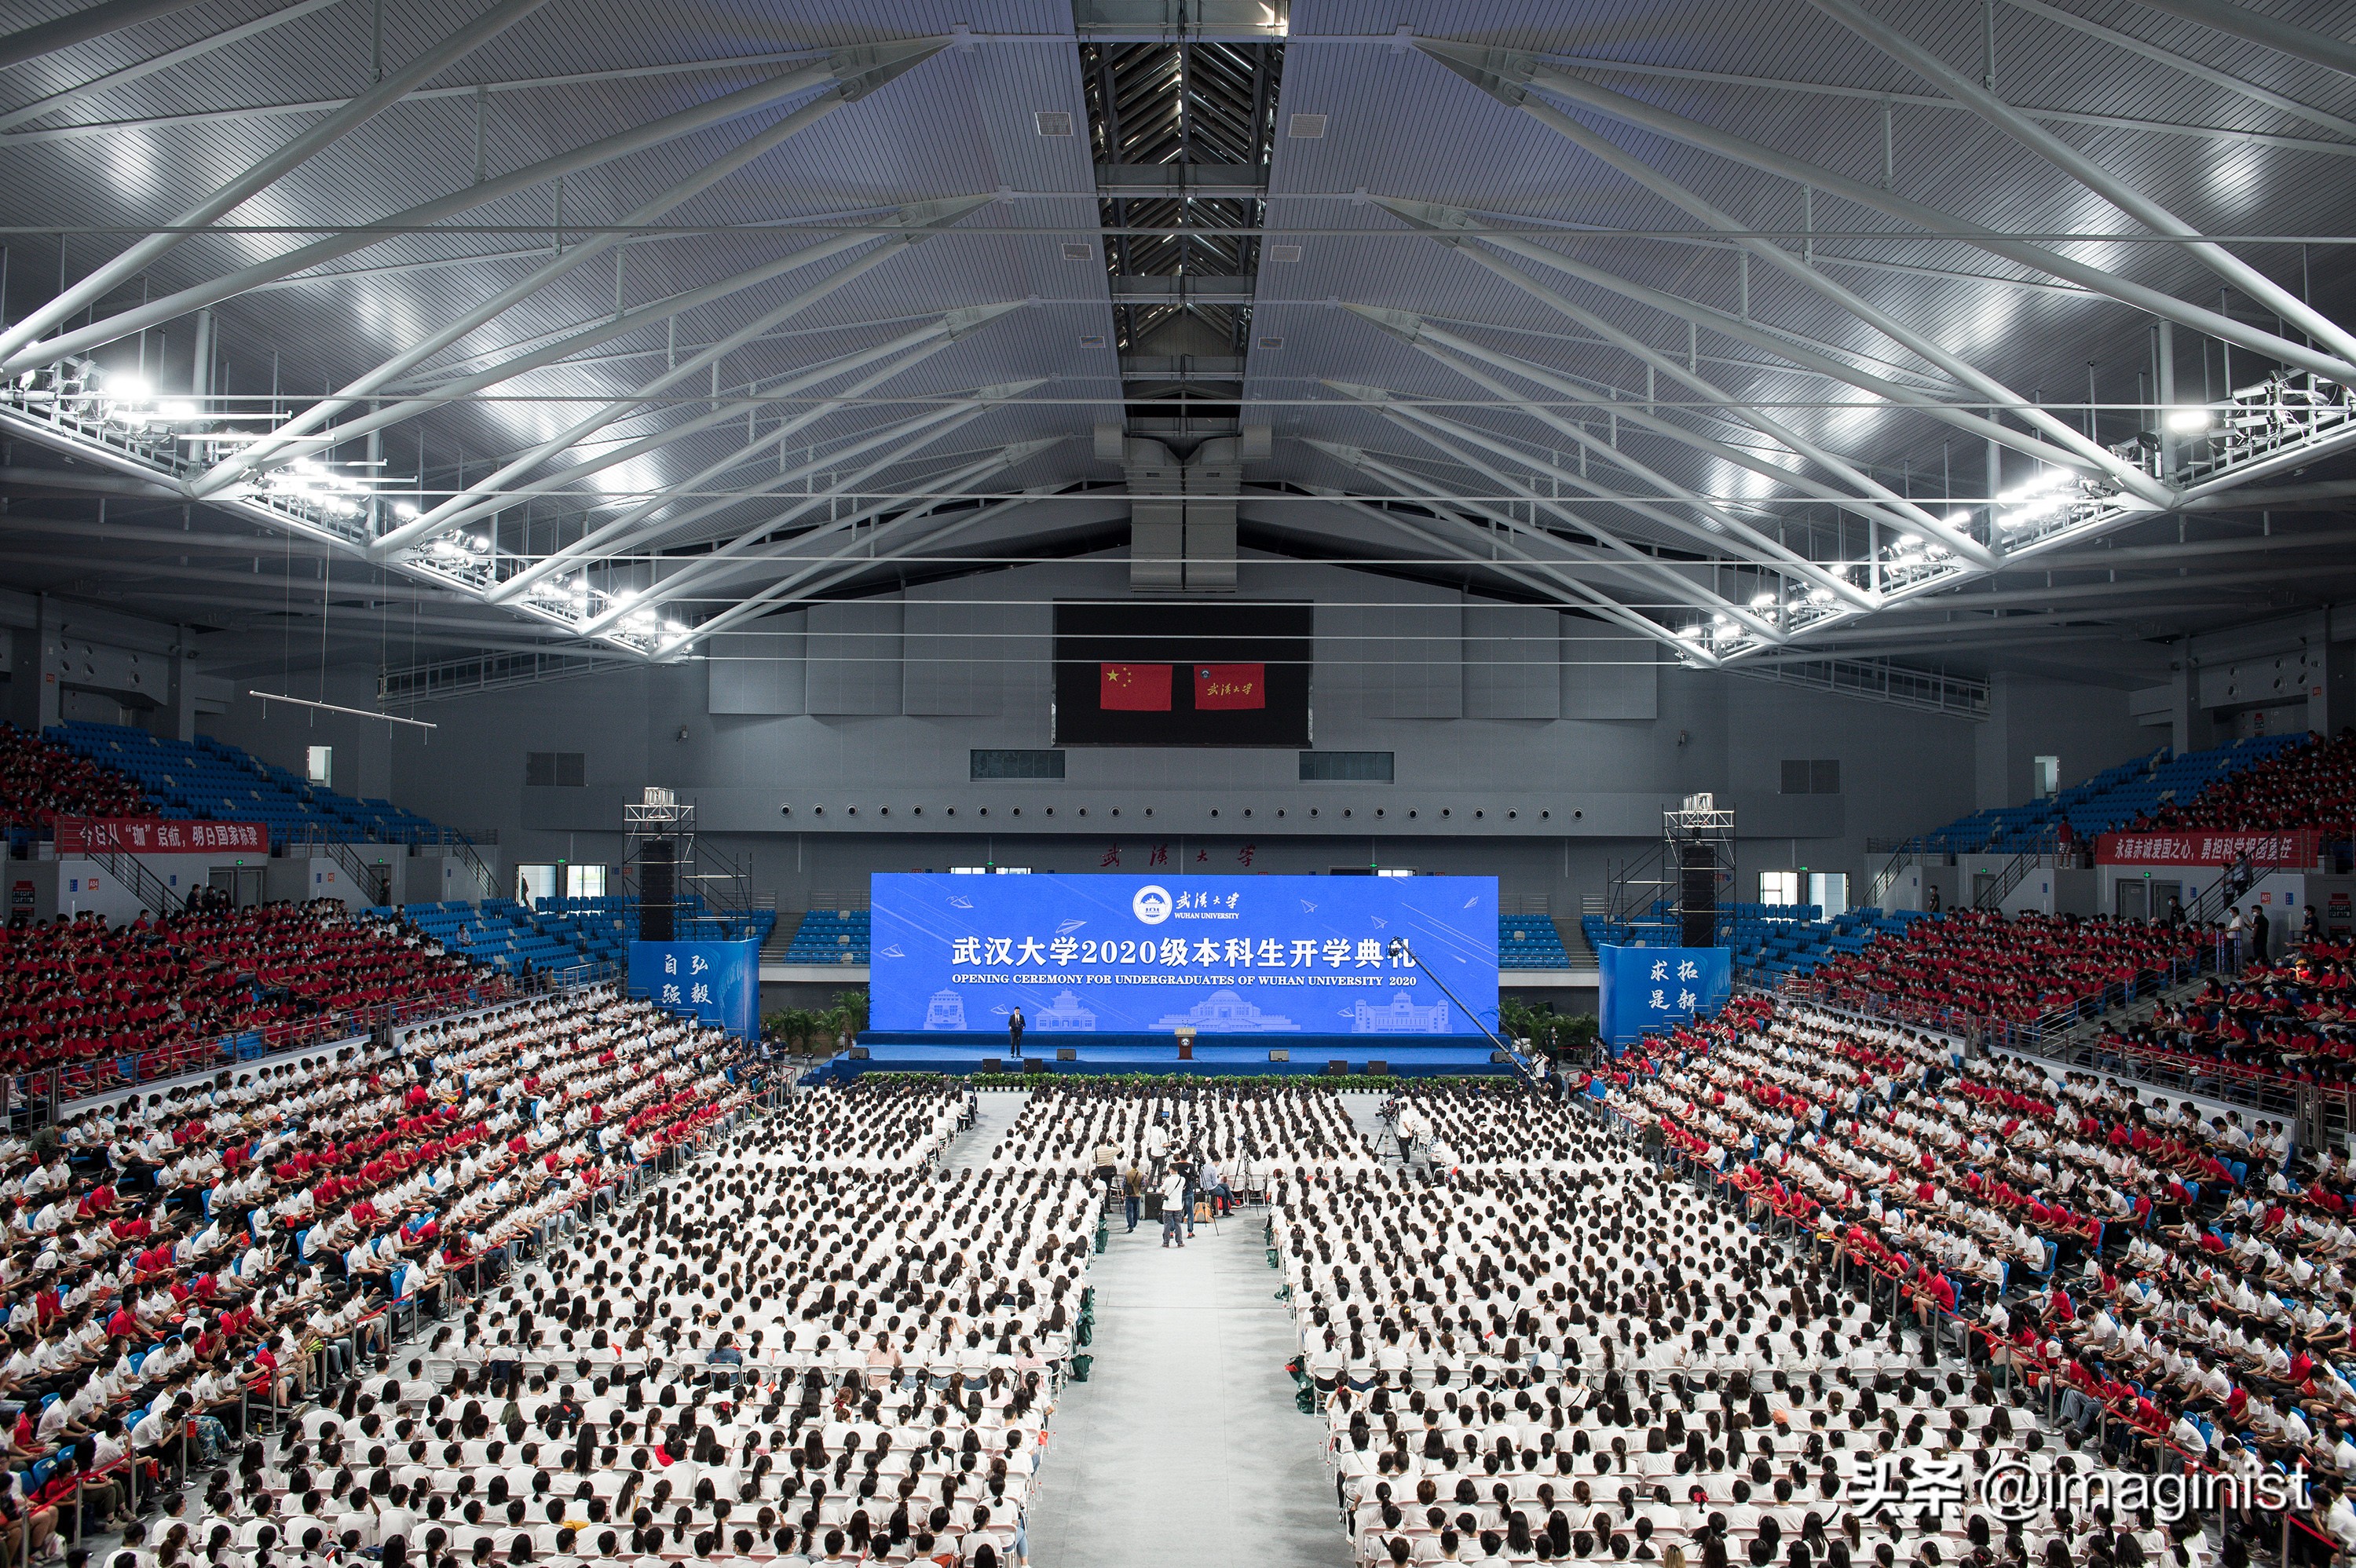 武大举行本科开学典礼,7000多名新生齐唱《夜空中最亮的星》